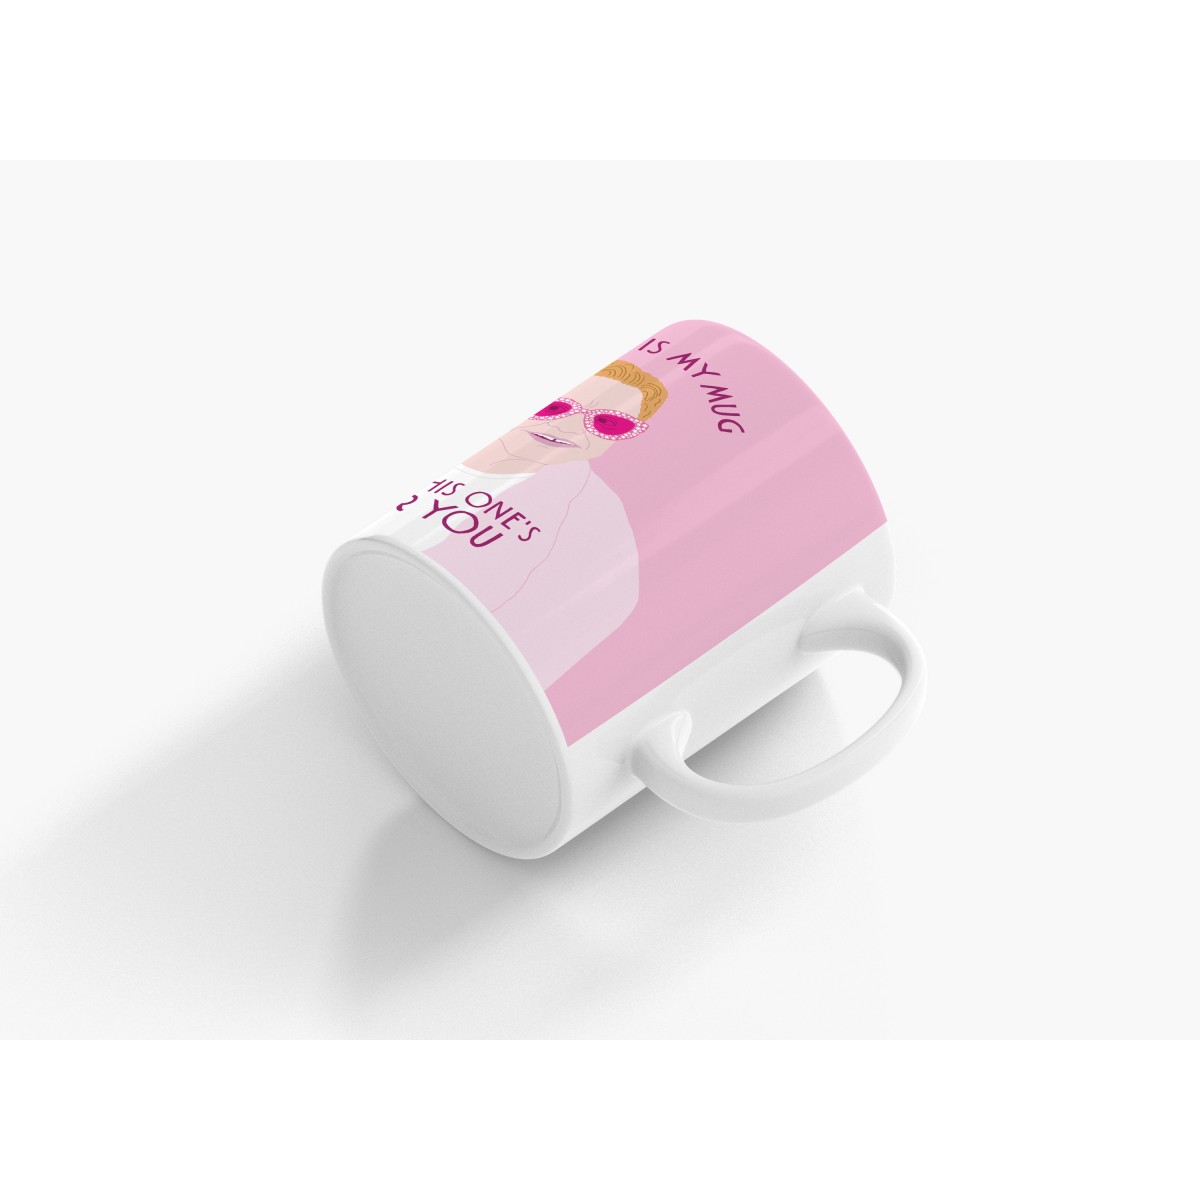 typealive / Tasse aus Keramik / "Icons" Your Mug